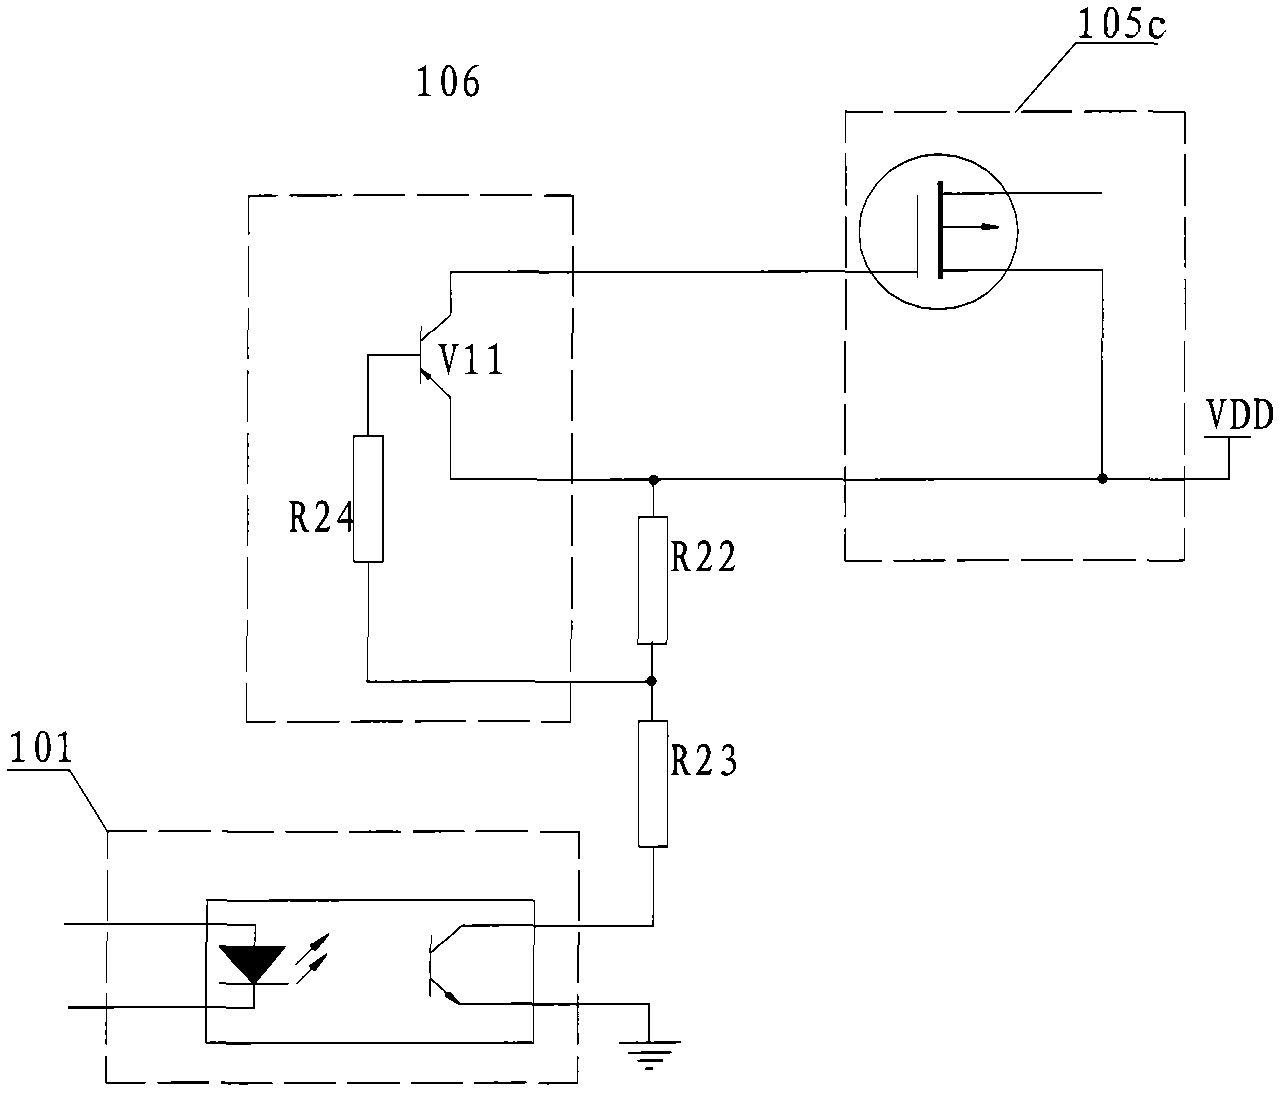 H-bridge driving control circuit of motor